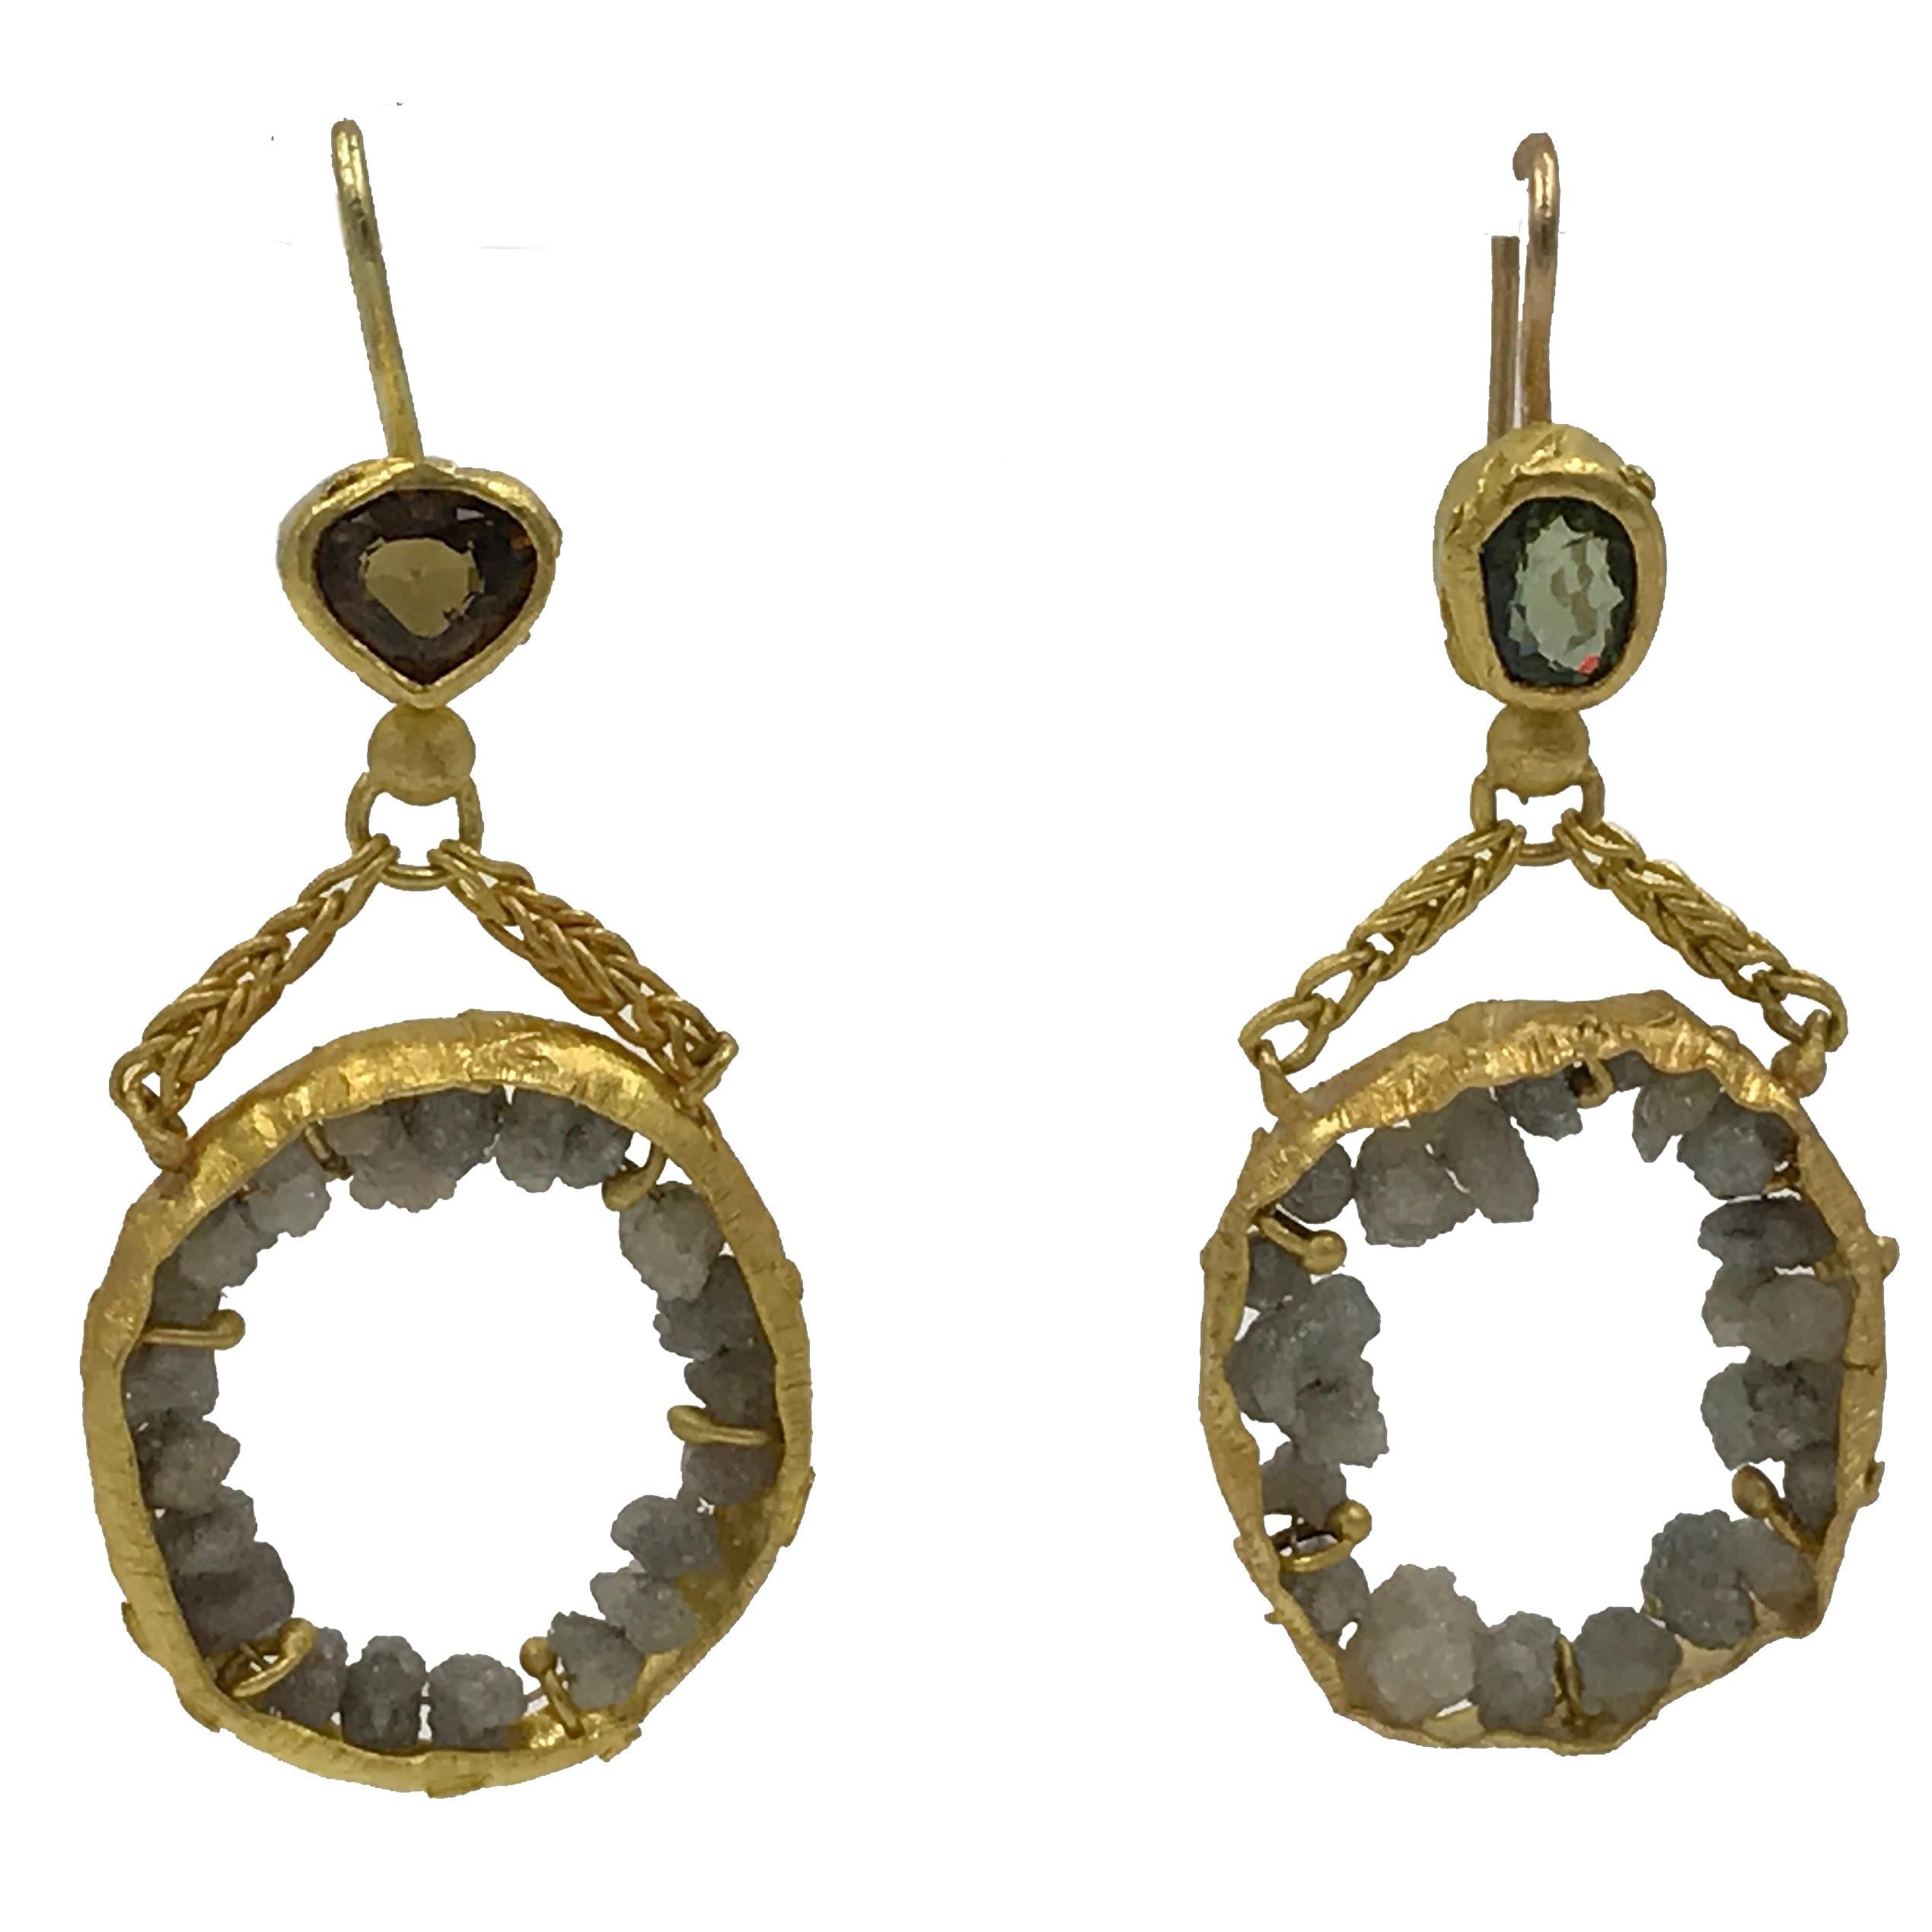 Raw Diamonds Demantoid Garnets 22 Karat 21K Gold Dangle Chandelier Earrings   For Sale